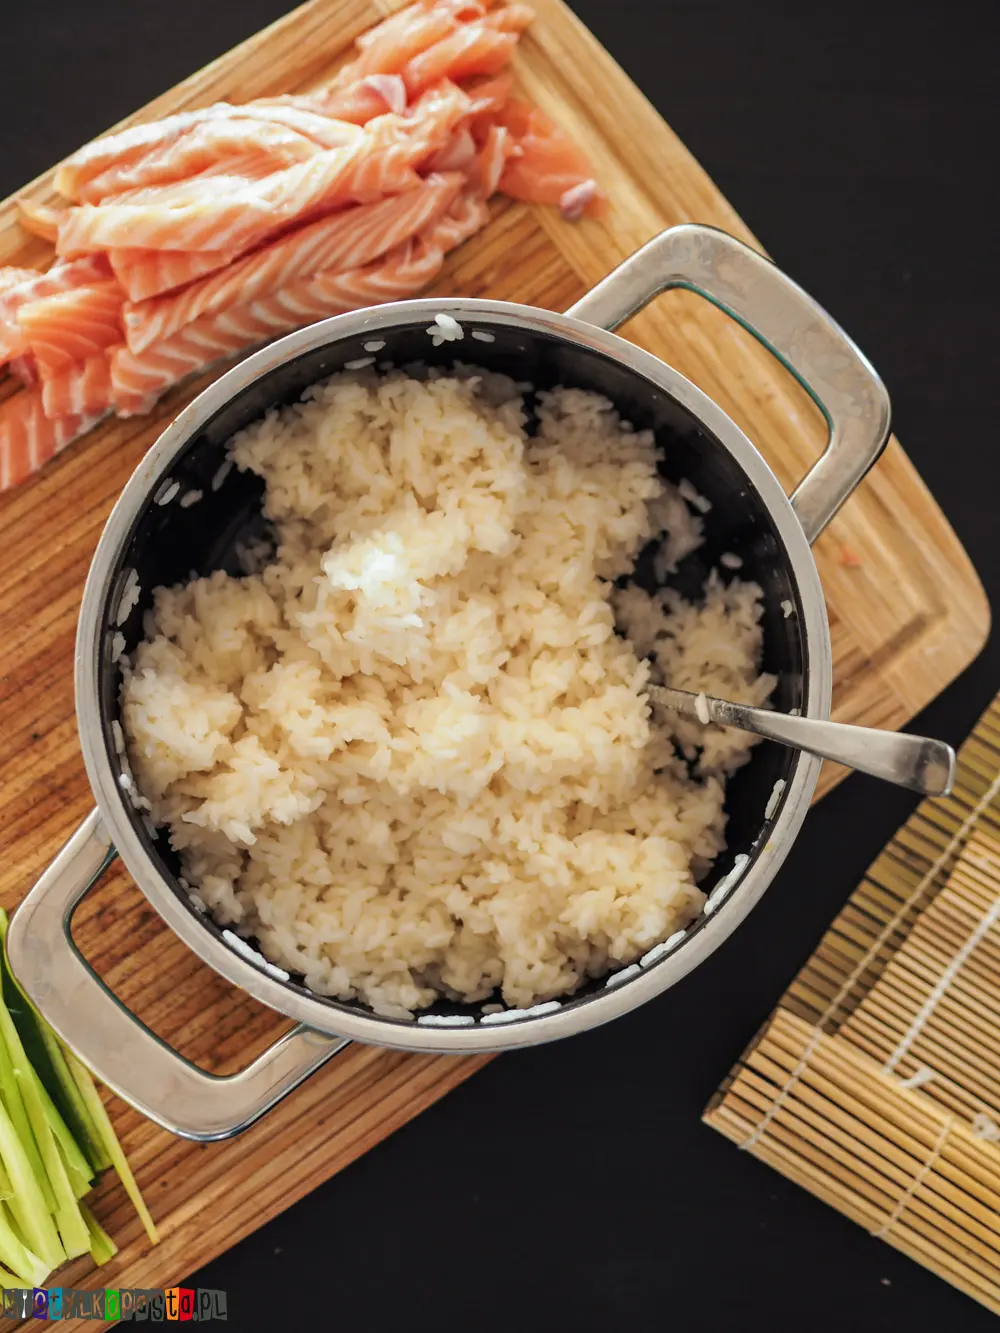 ryż do sushi po jakim czasie fermentuje - Czy ryż fermentuje